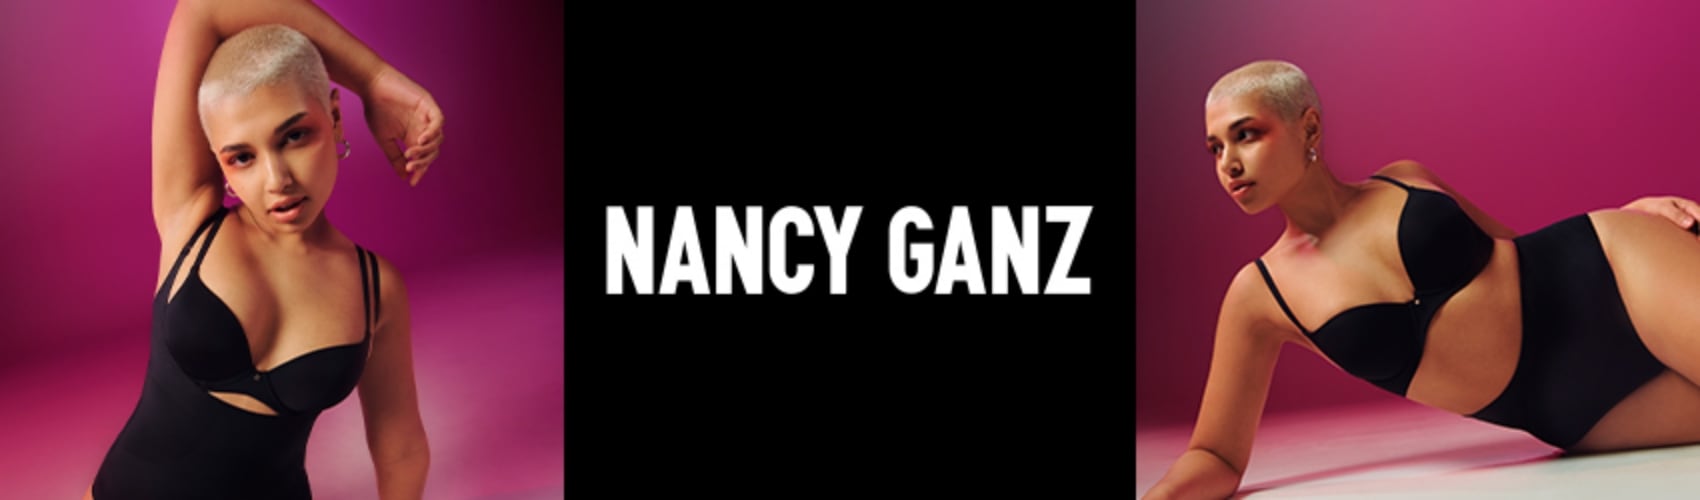 Nancy Ganz 